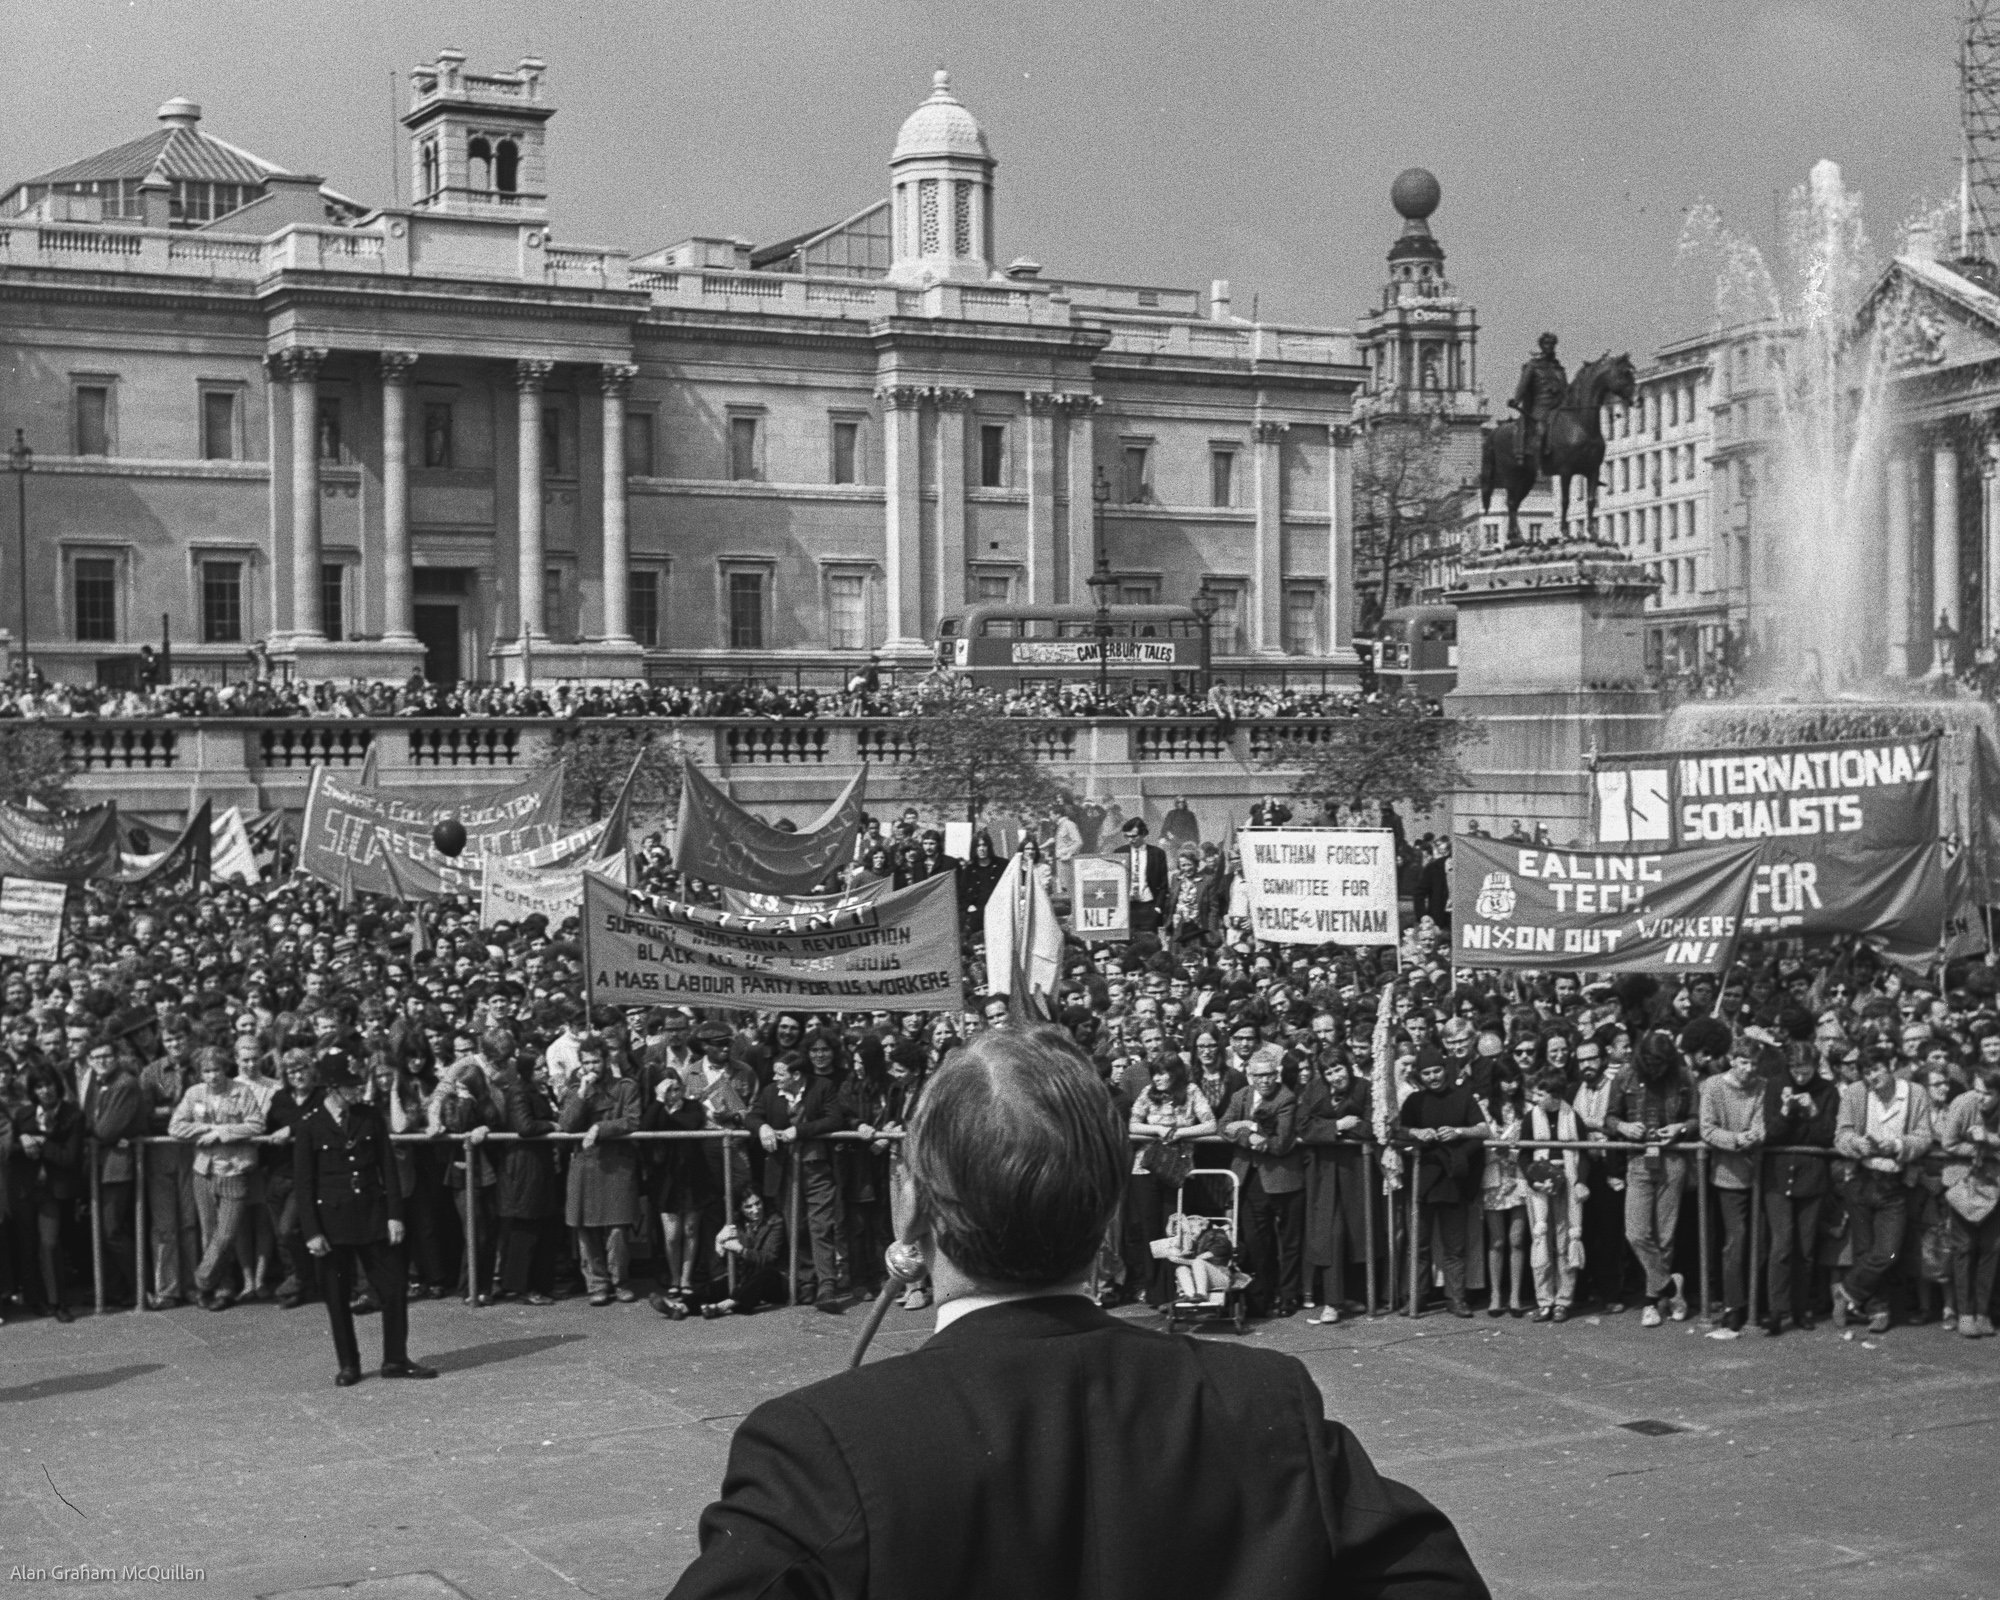 Assembling for speeches in Trafalgar Square